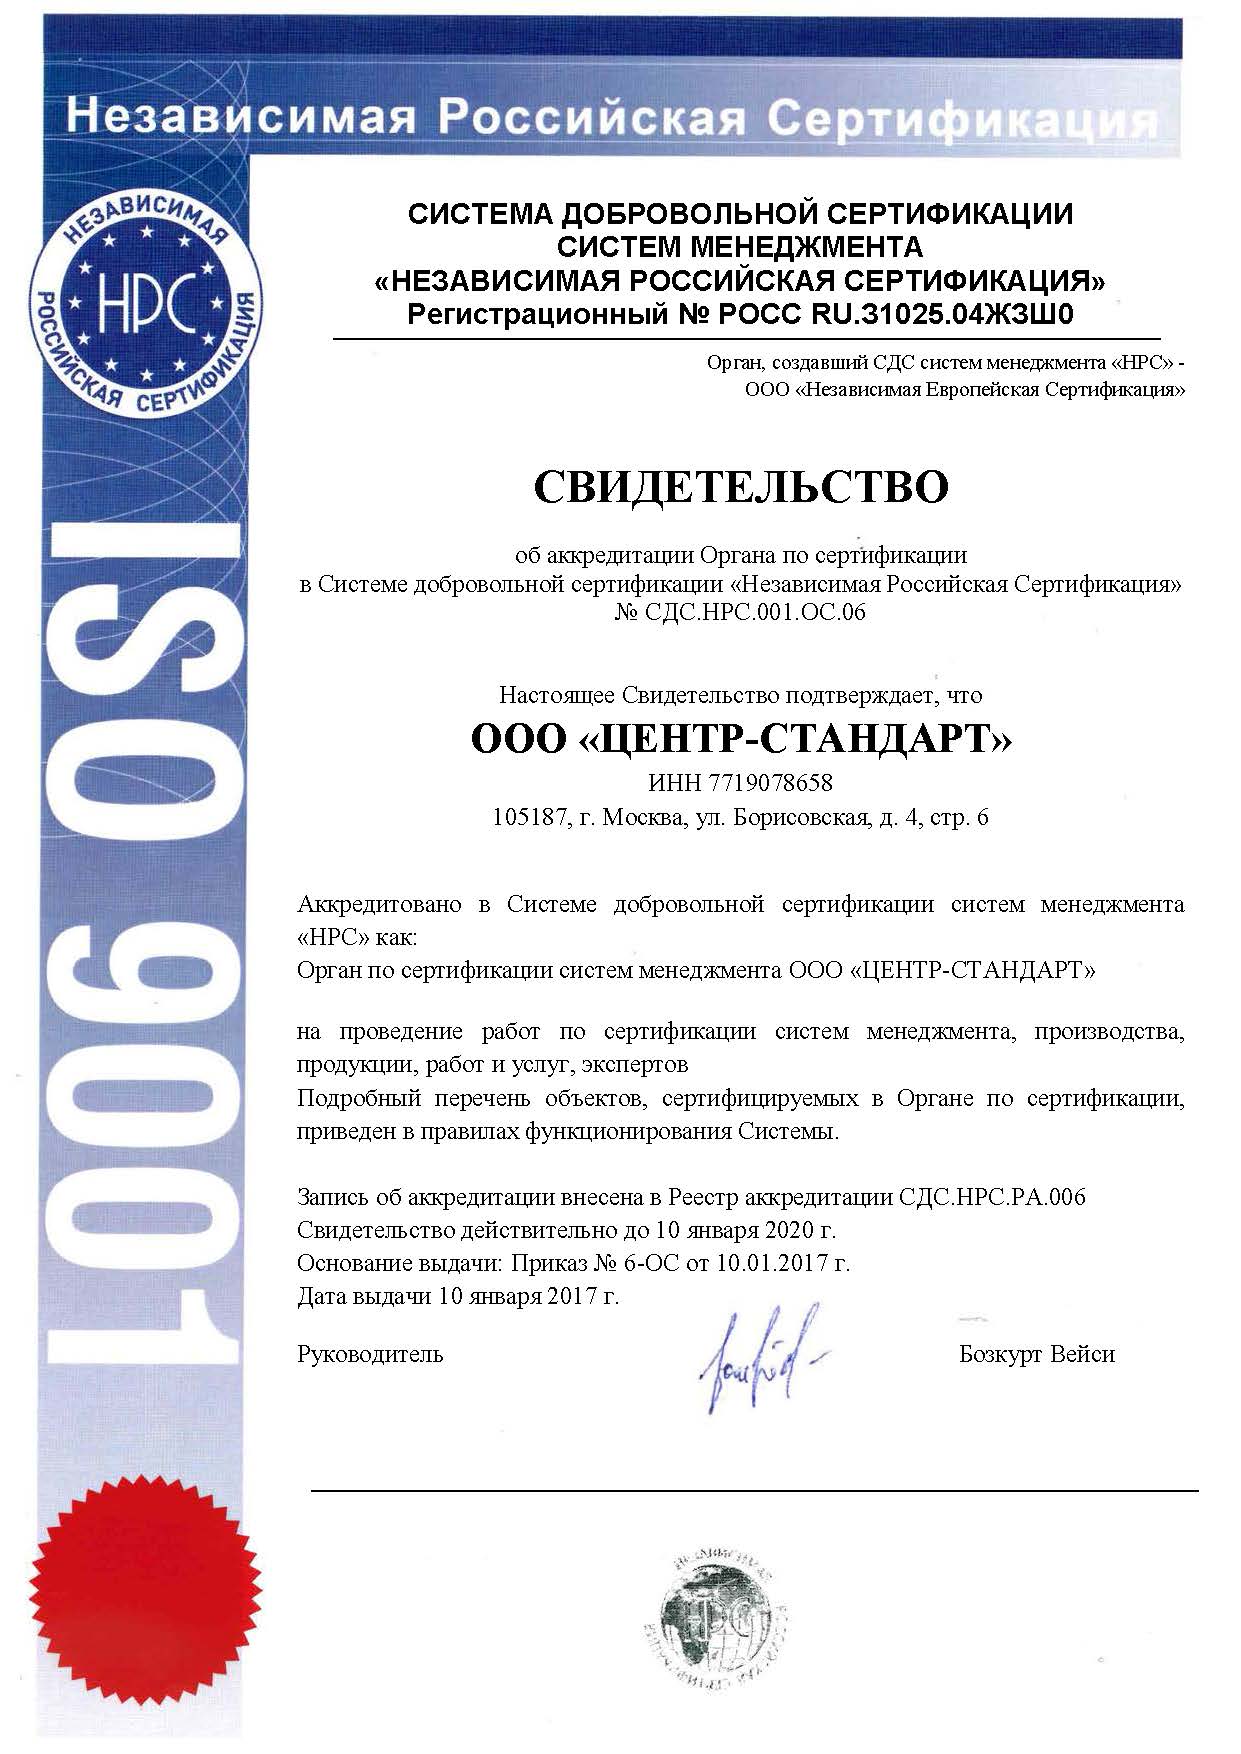 Сертификат в СДС "НРС"